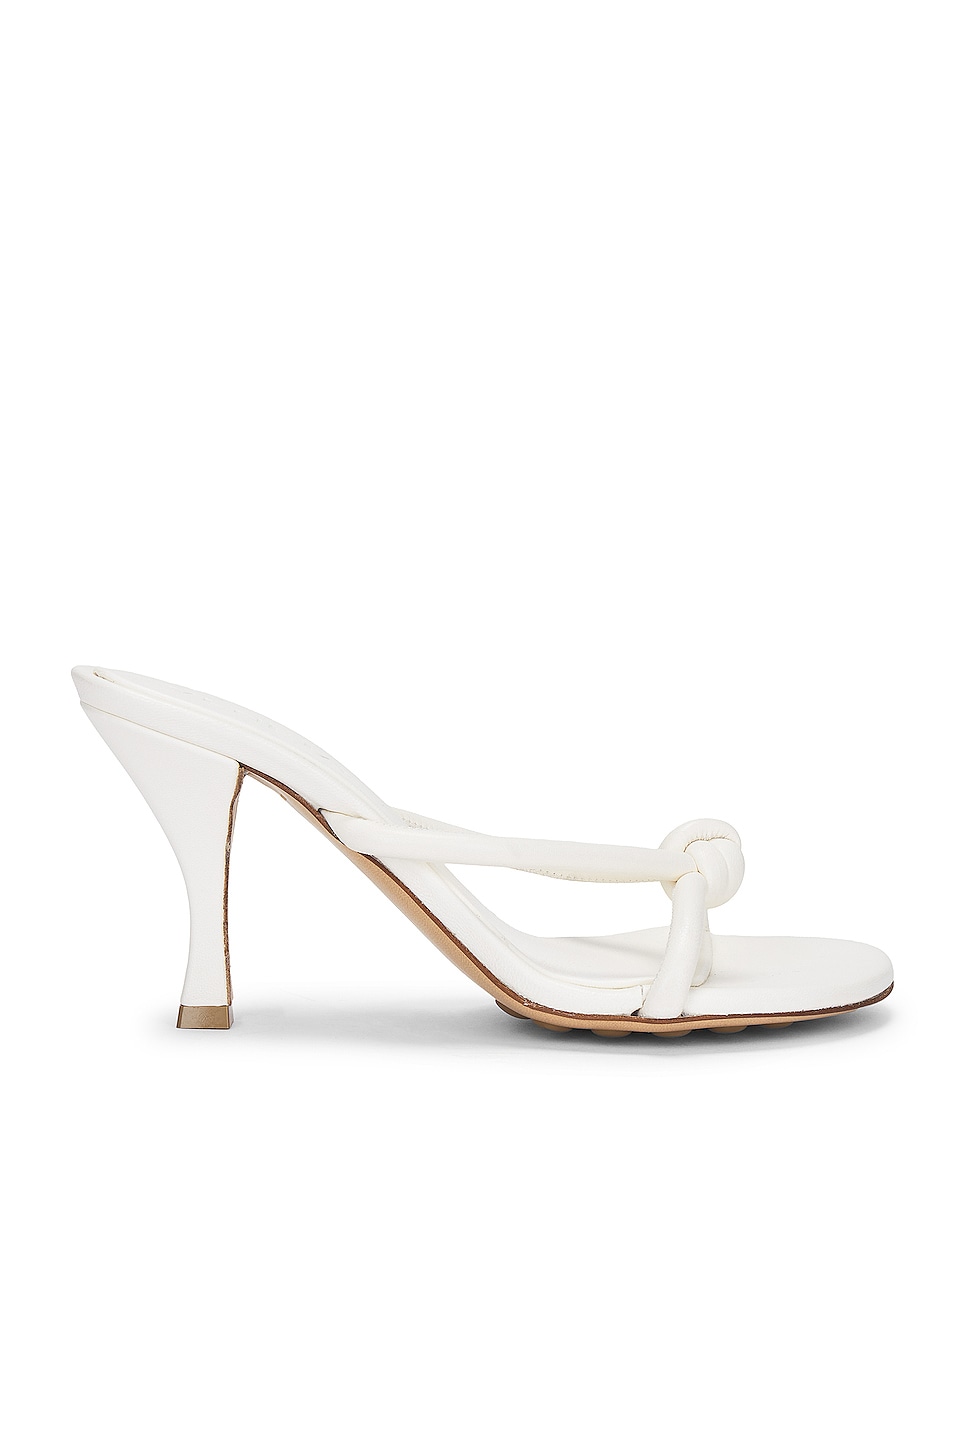 Image 1 of Bottega Veneta Blink Mule Sandal in White